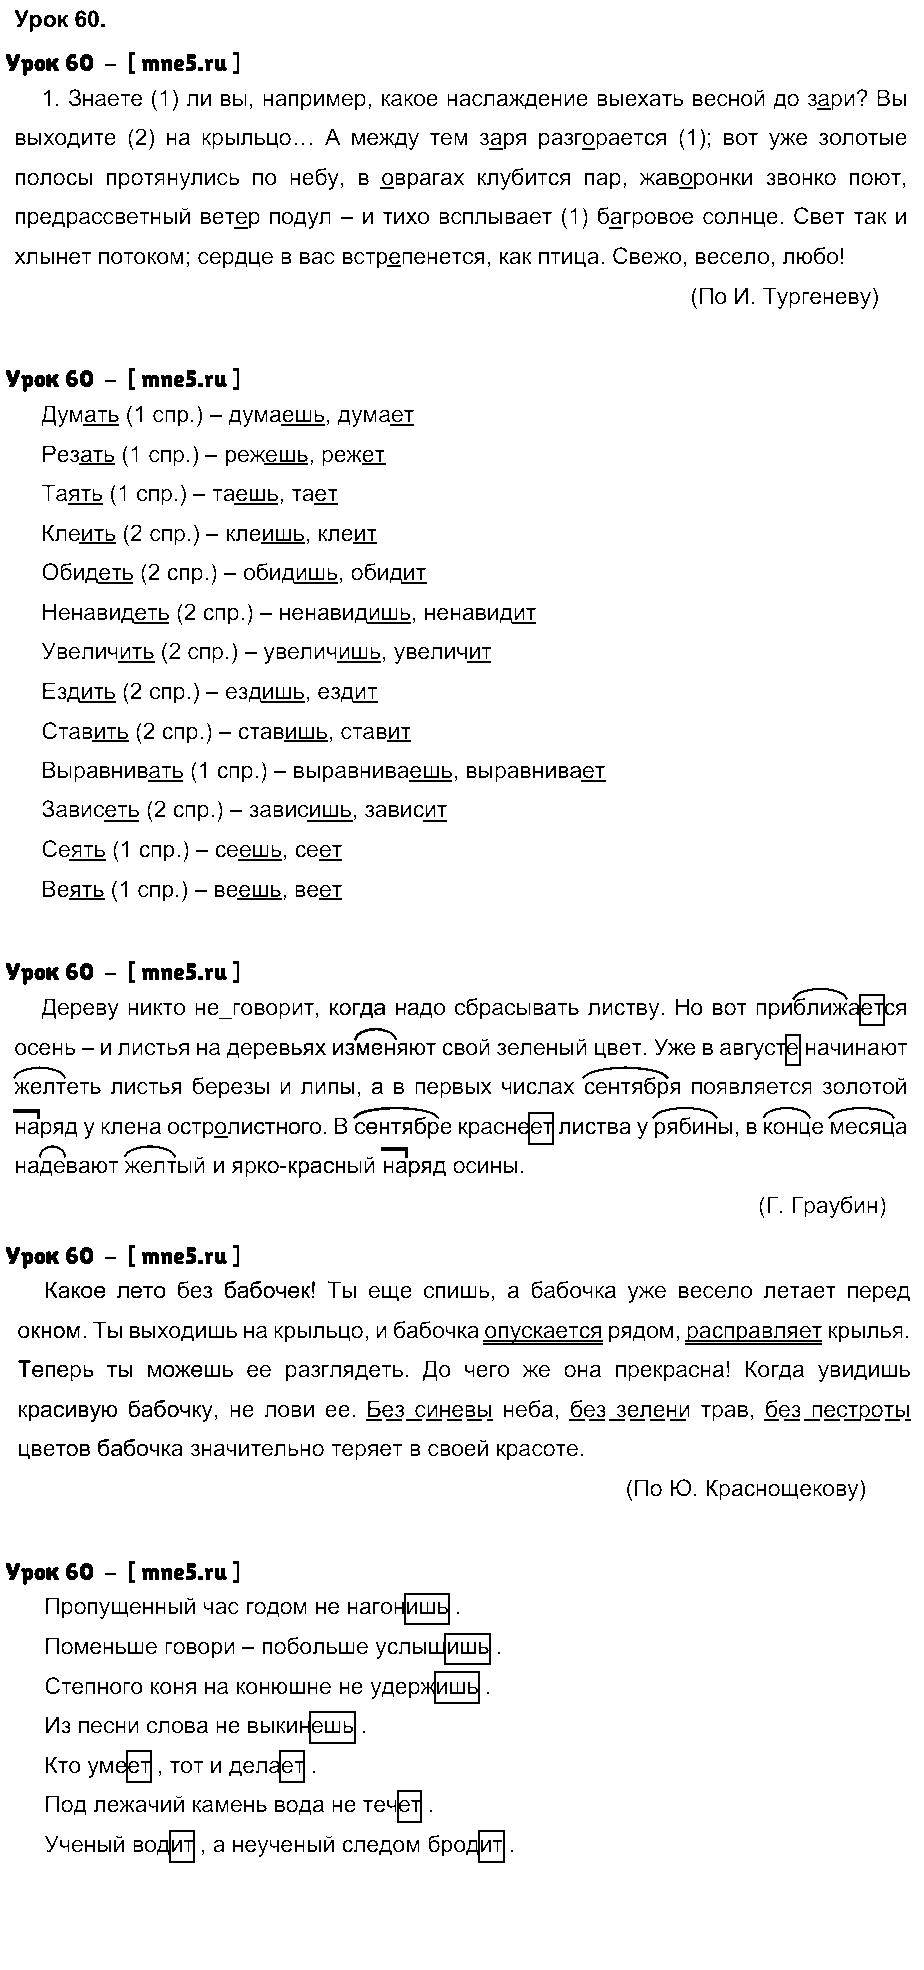 ГДЗ Русский язык 4 класс - Урок 60